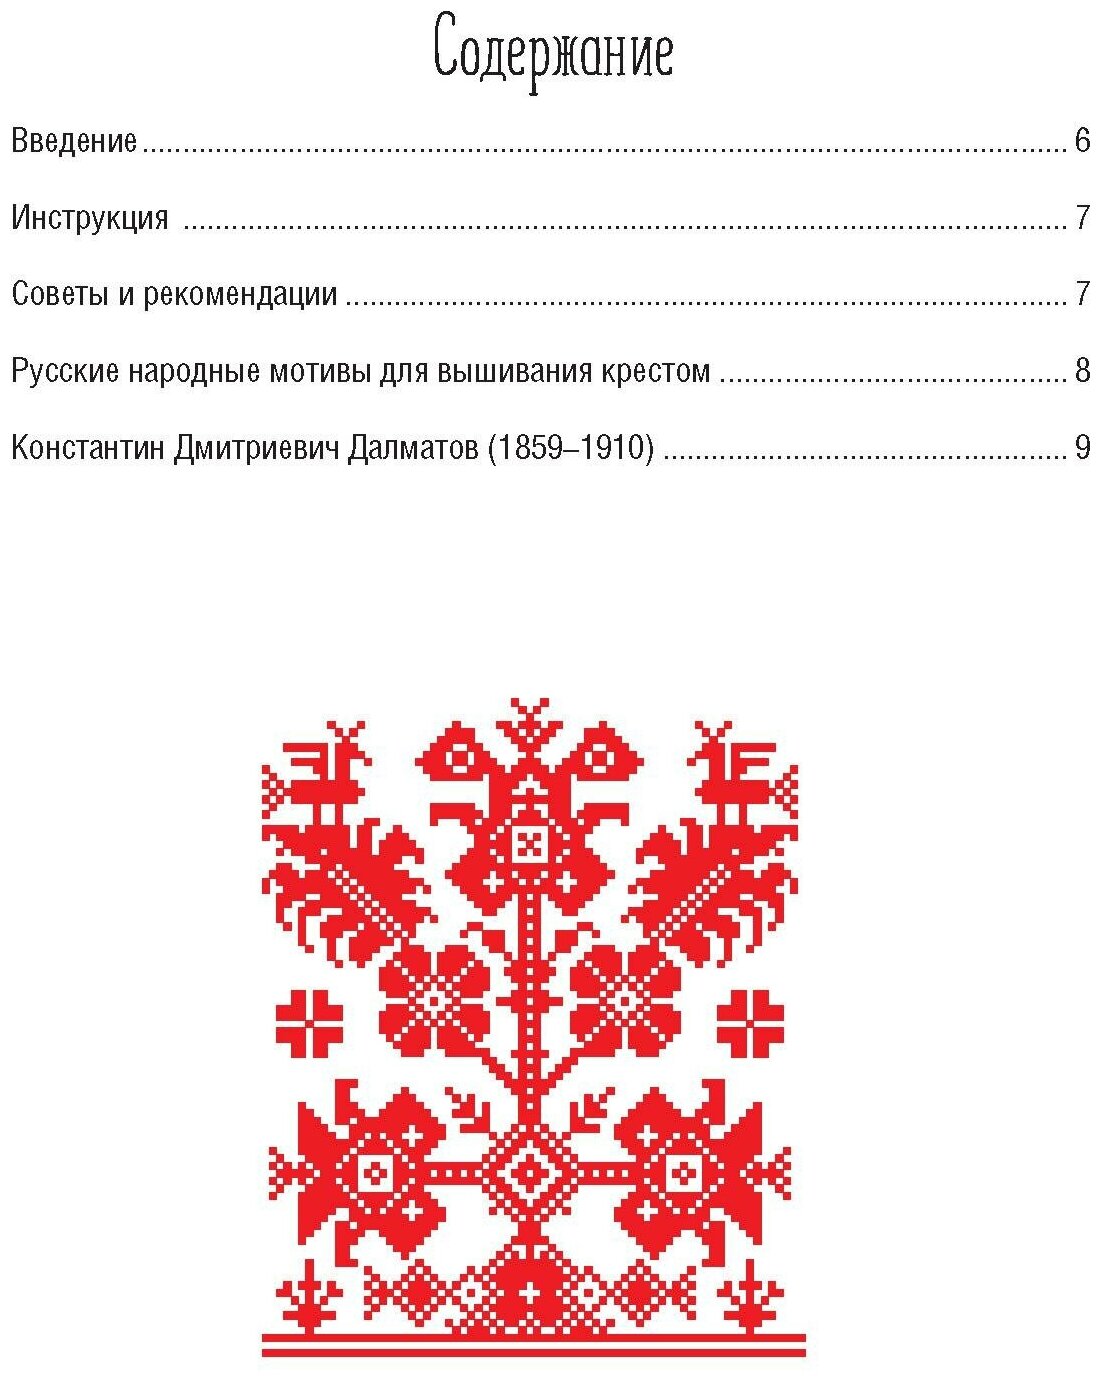 Русские узоры для вышивания крестом Более 100 подробных схем Коллекция вышивок собранная К Д Далматовым и исполненная в 1889 году - фото №2